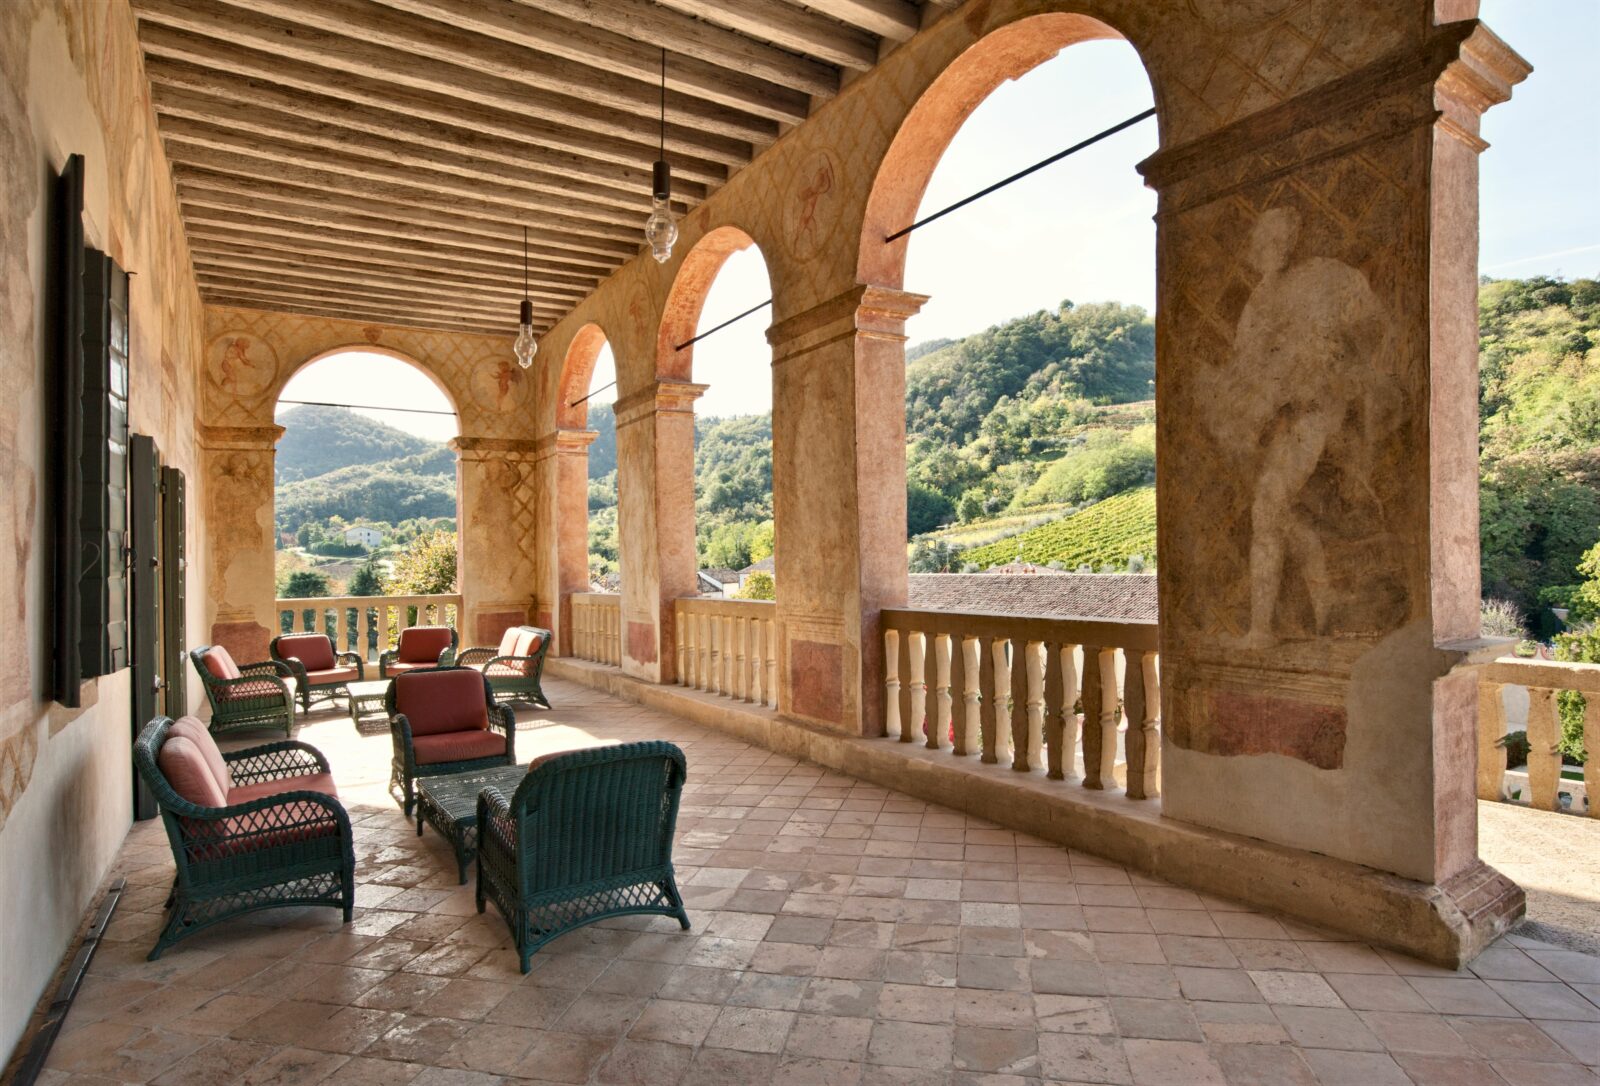 Loggia at Villa dei Vescovi